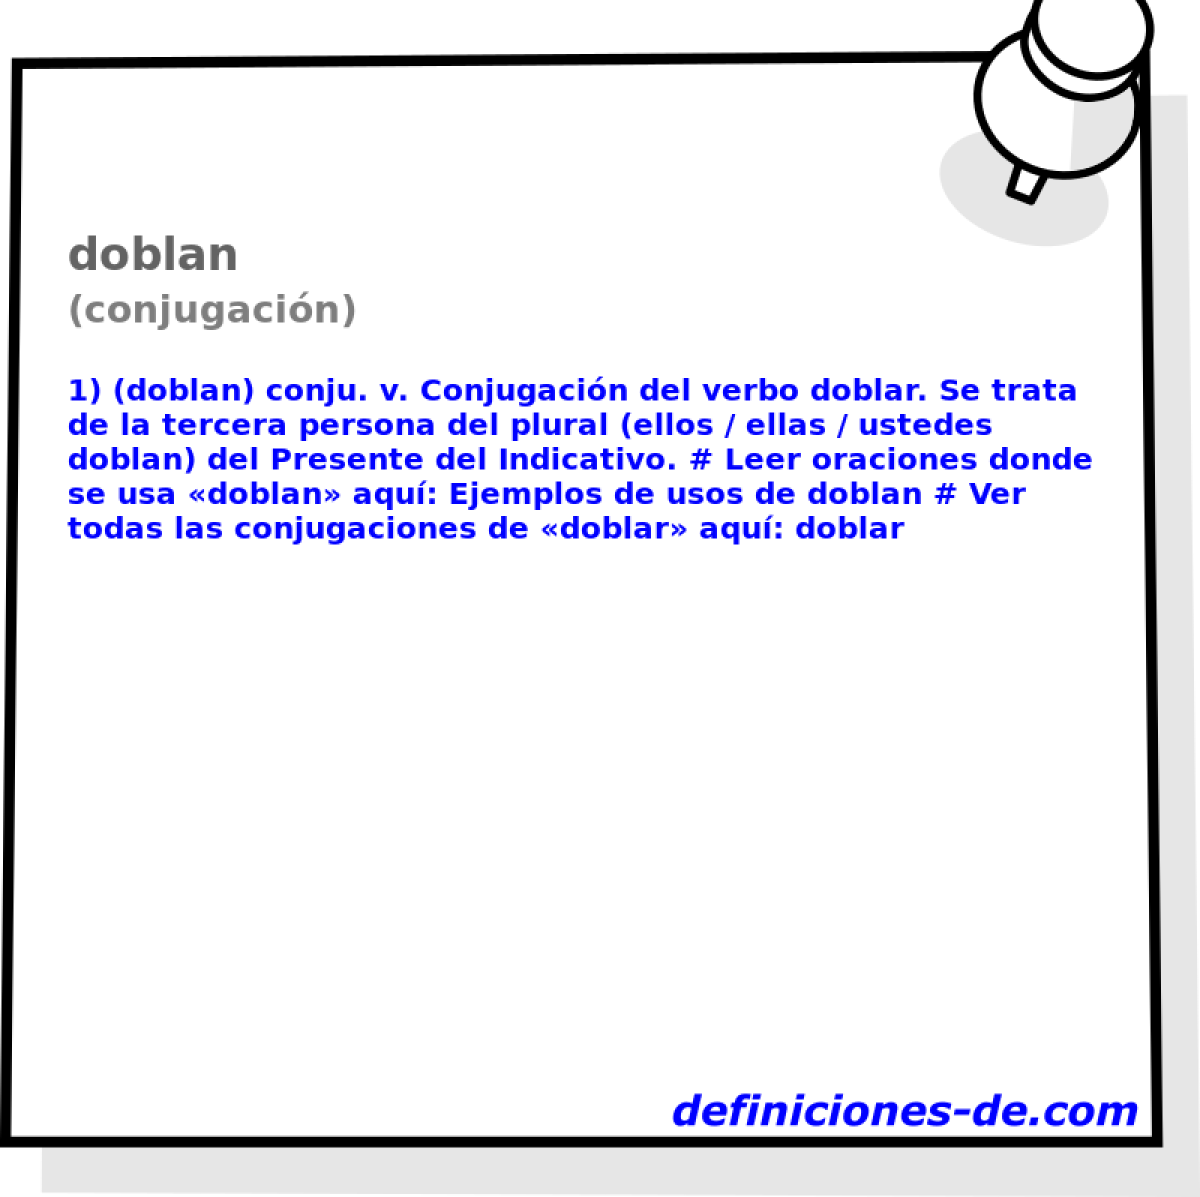 doblan (conjugacin)